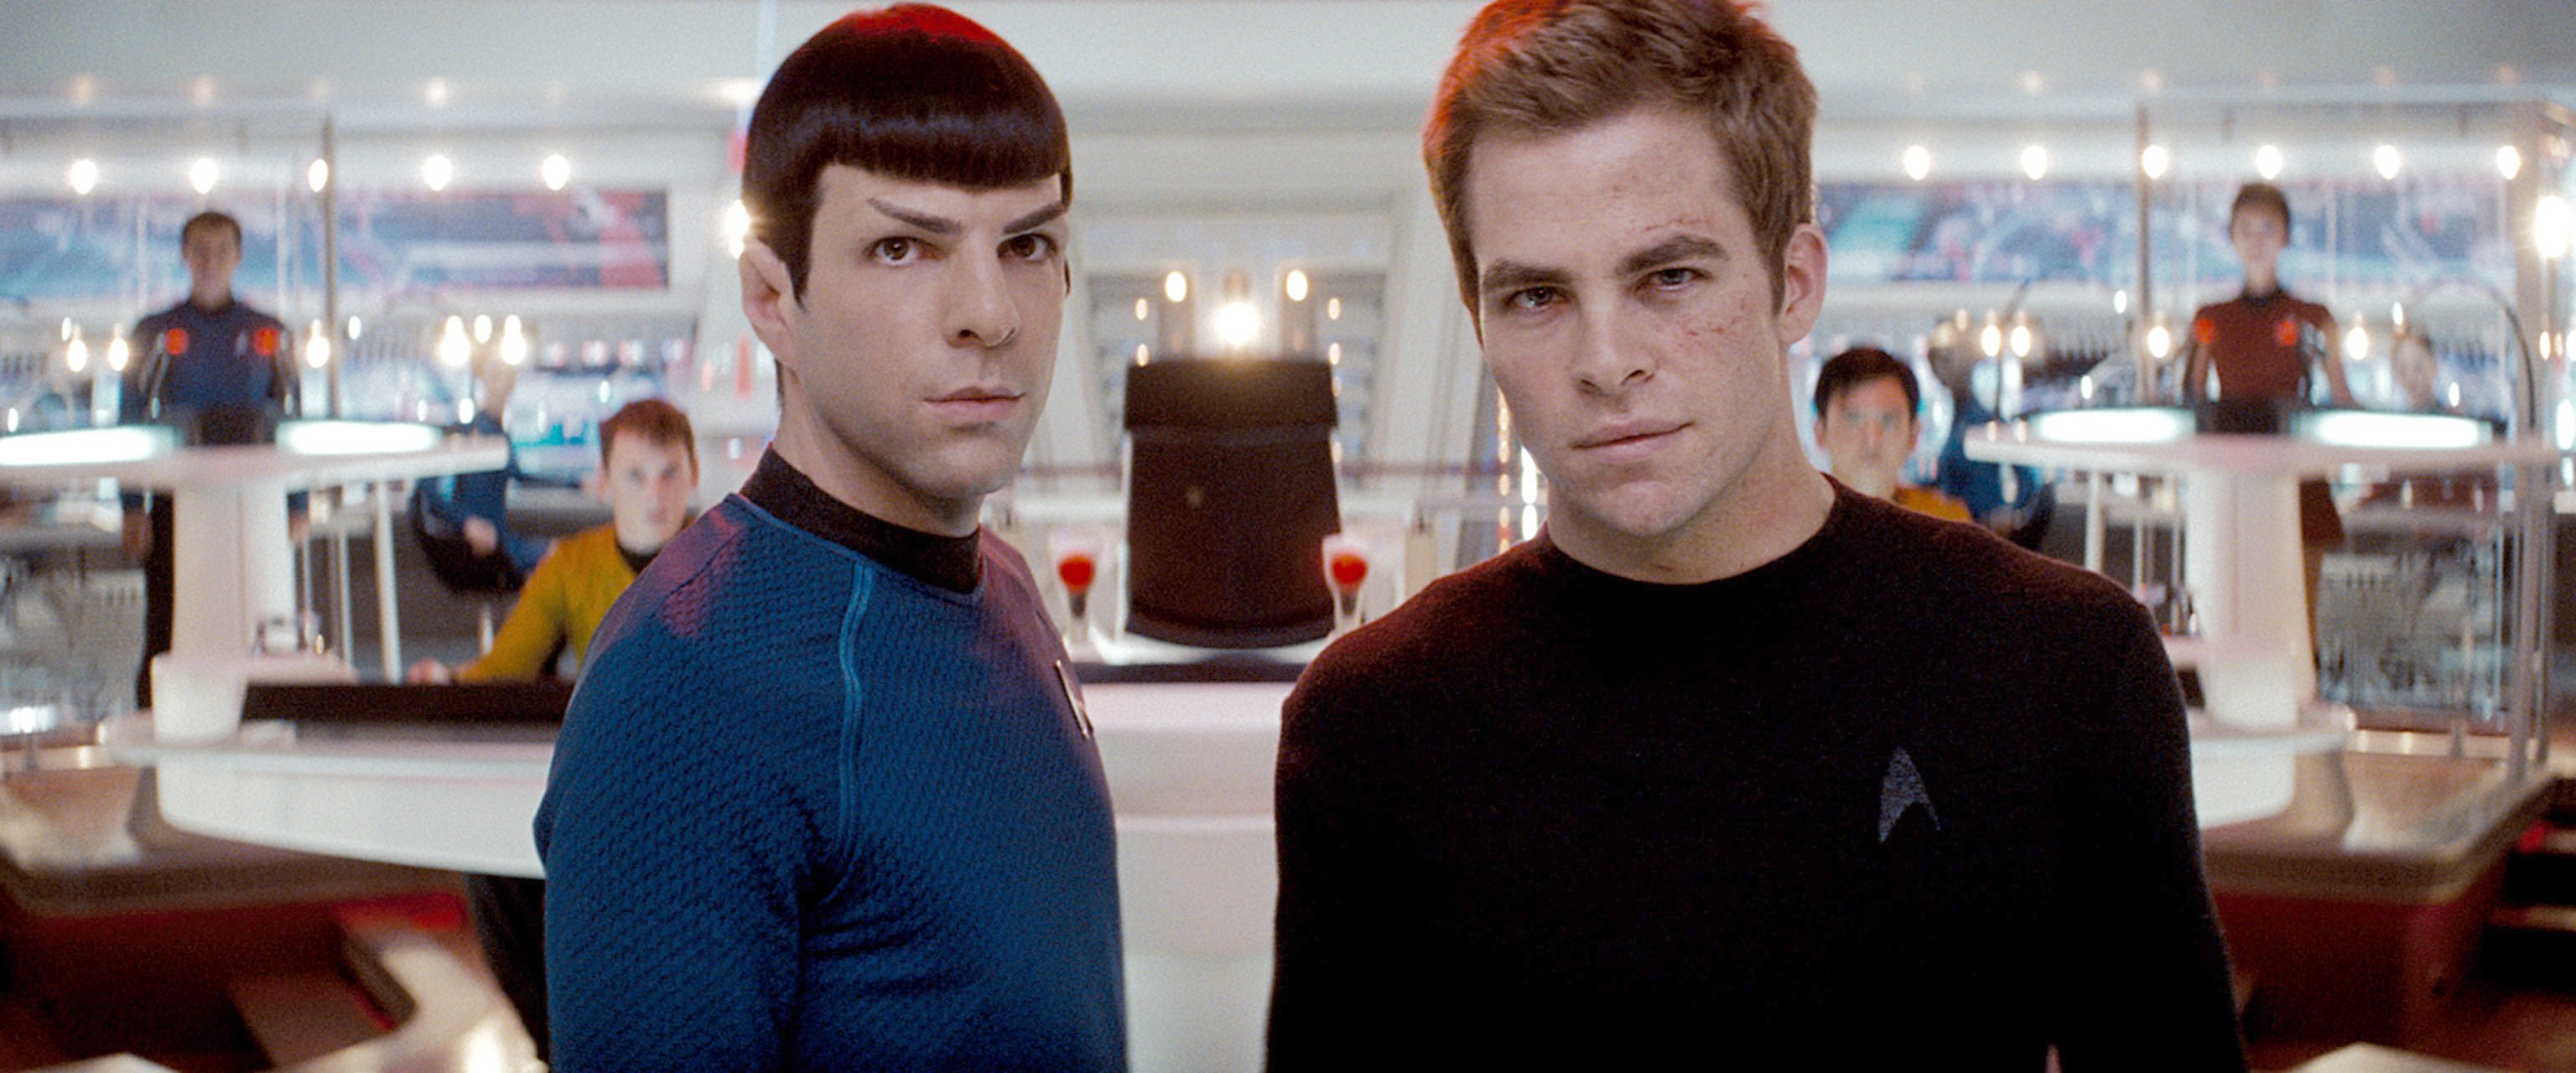 Yeni Star Trek filminin vizyon tarihi belli oldu